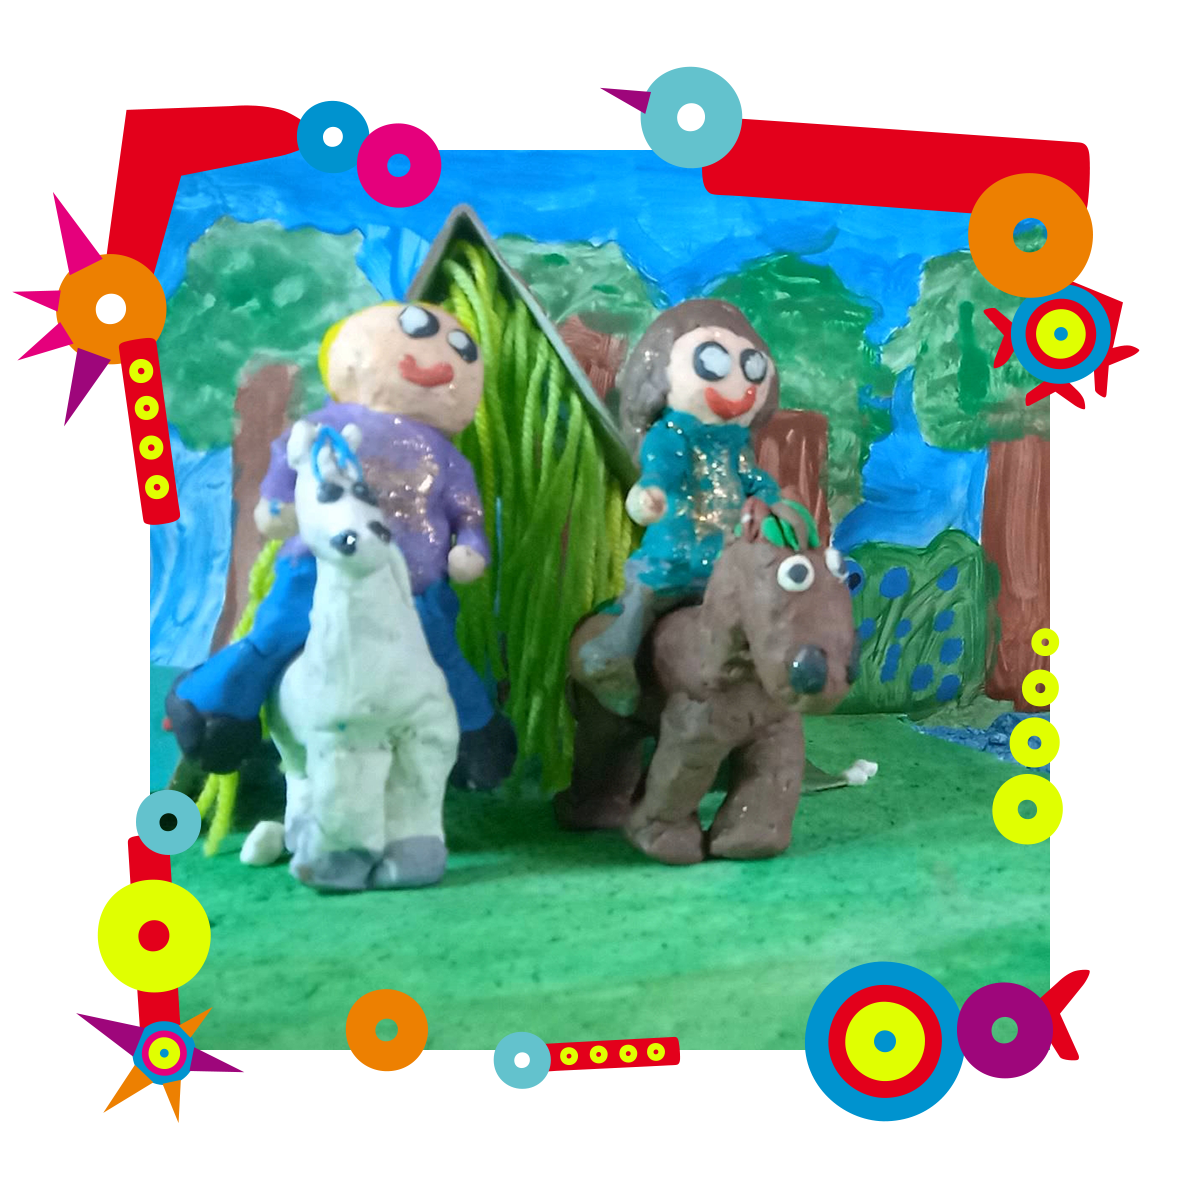 Dwie postacie zrobione z plasteliny siedzą na plastelinowych koniach. Stoją na namalowanej farbami trawie, za nimi namalowane drzewa oraz niebo. Dookoła kolorowa ramka.